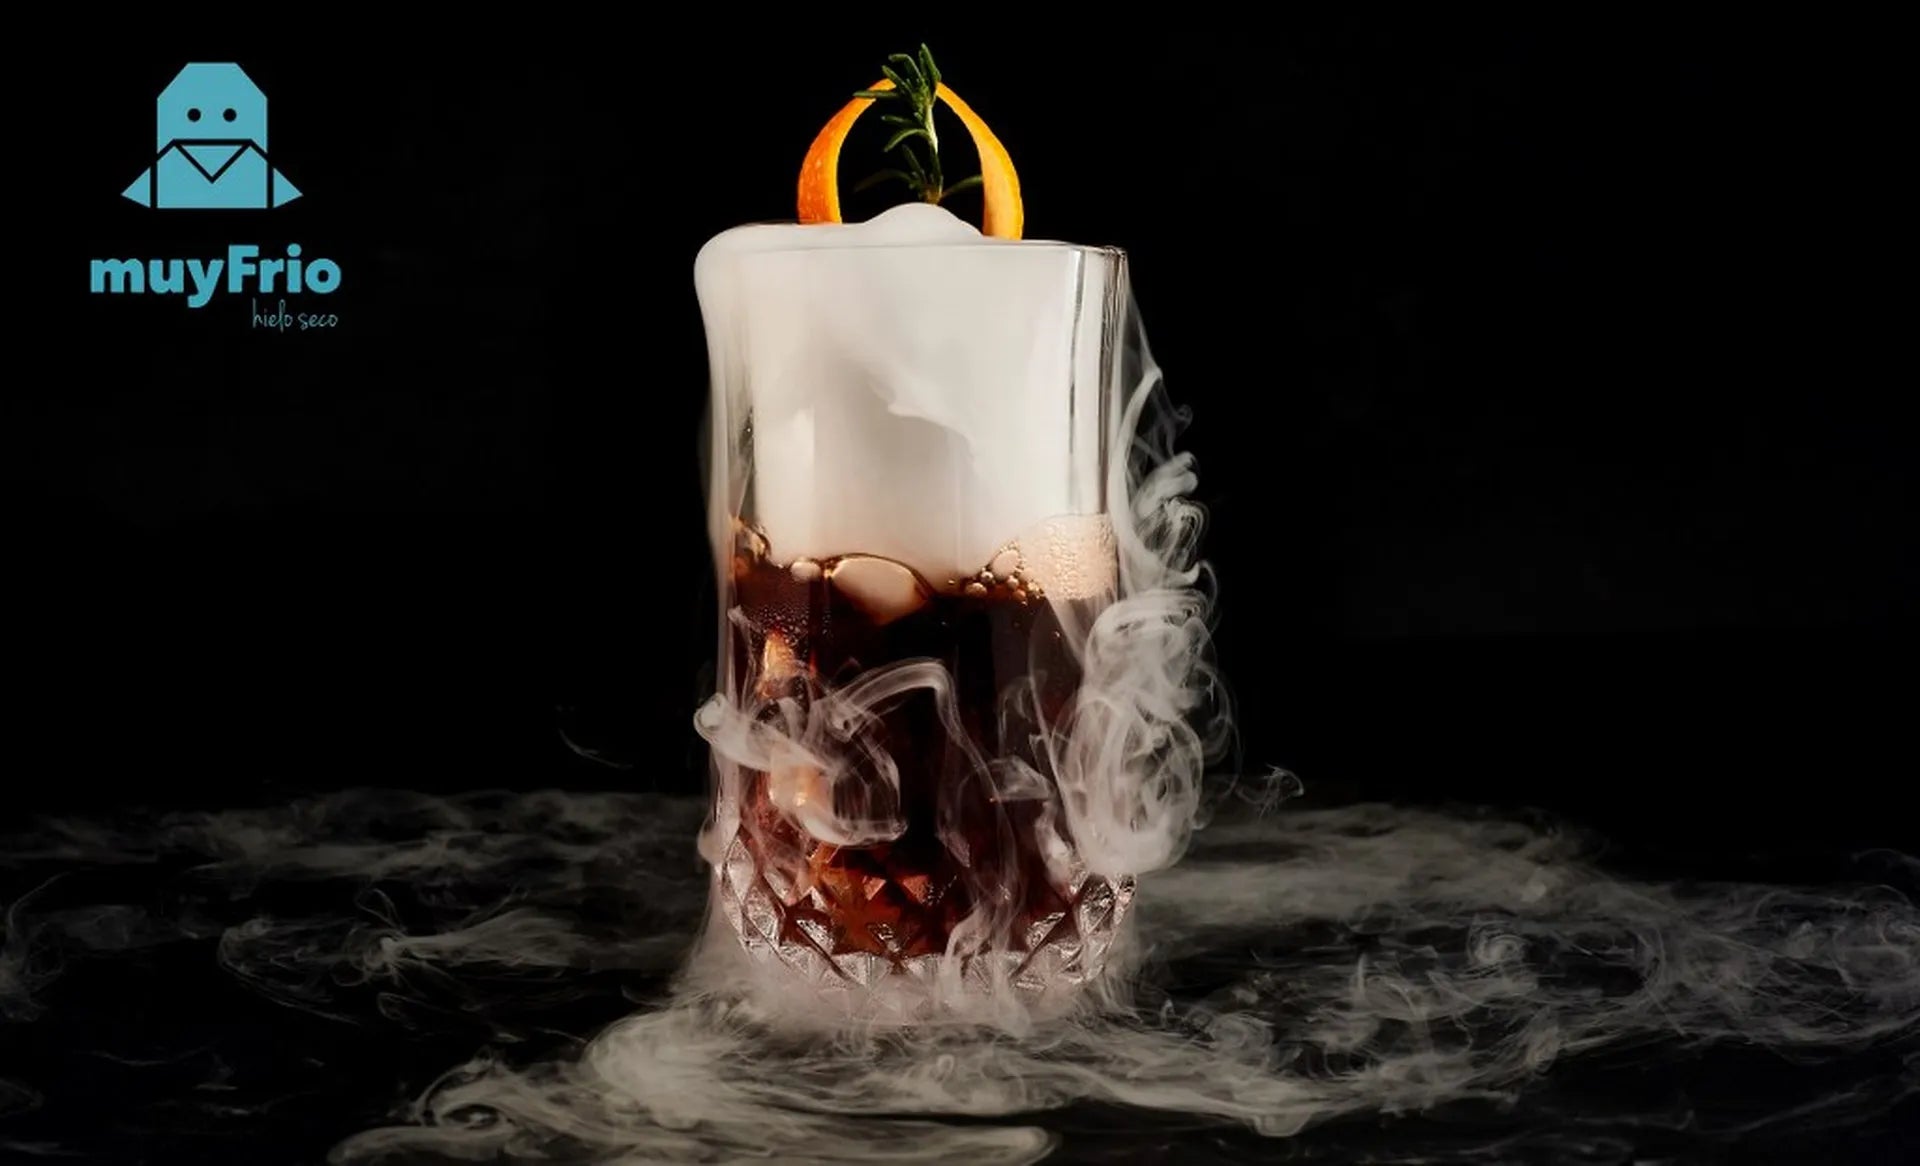 Efecto humo en coctelería con hielo seco ❄️ muyFrio